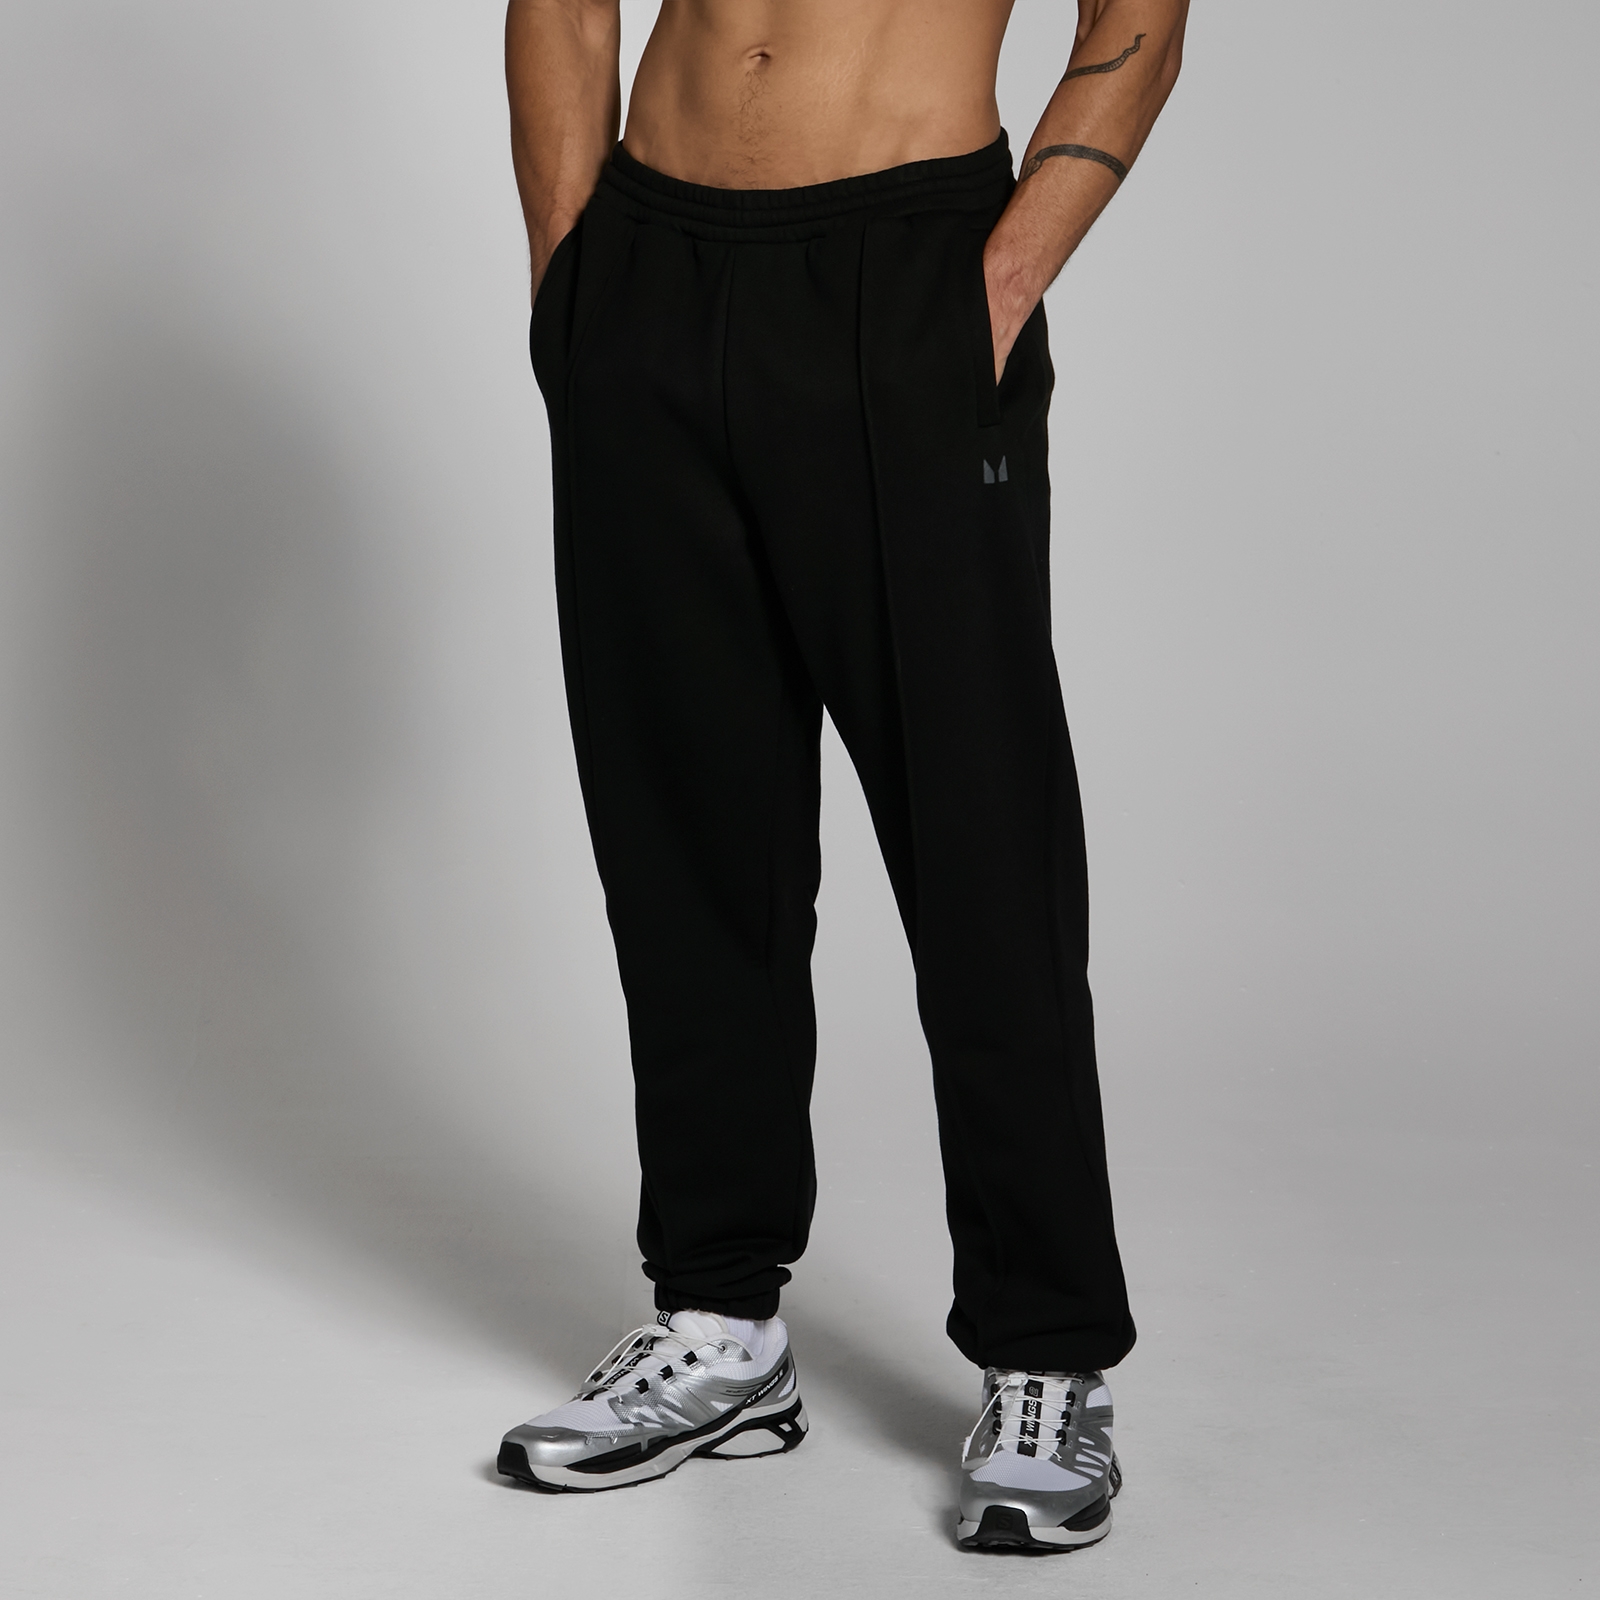 MP muške predimenzionirane sportske hlače za teške uvjete rada Lifestyle - crne - XS